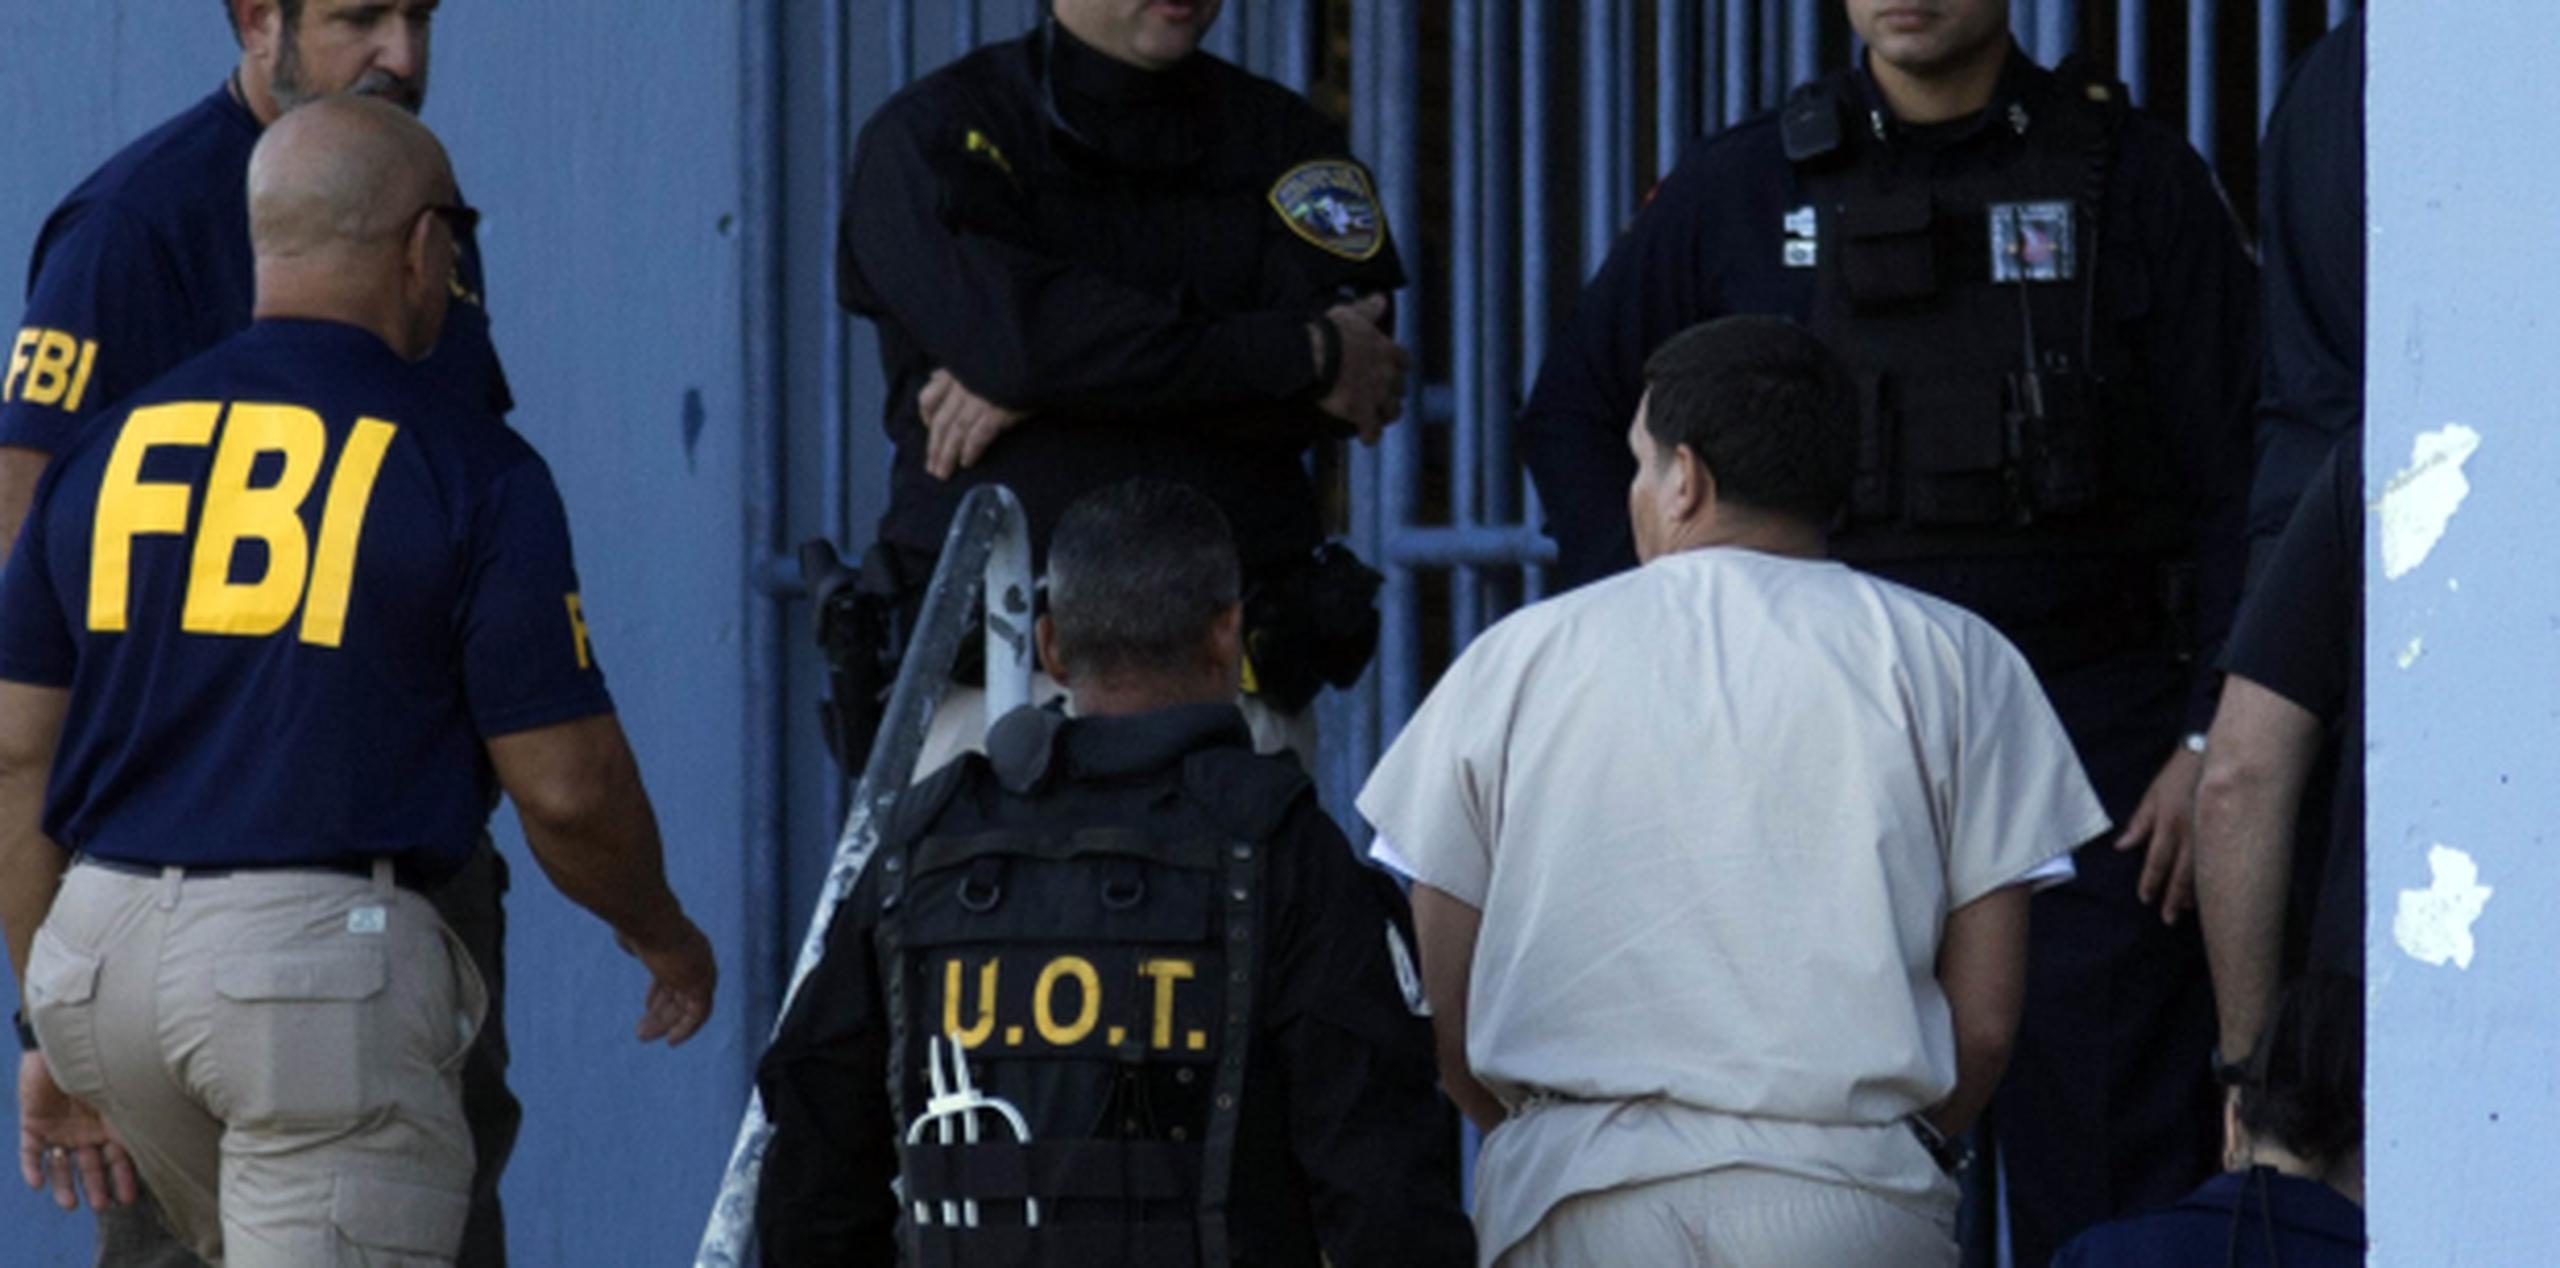 El pliego acusatorio es contra 104 personas. (xavier.araujo@gfrmedia.com)